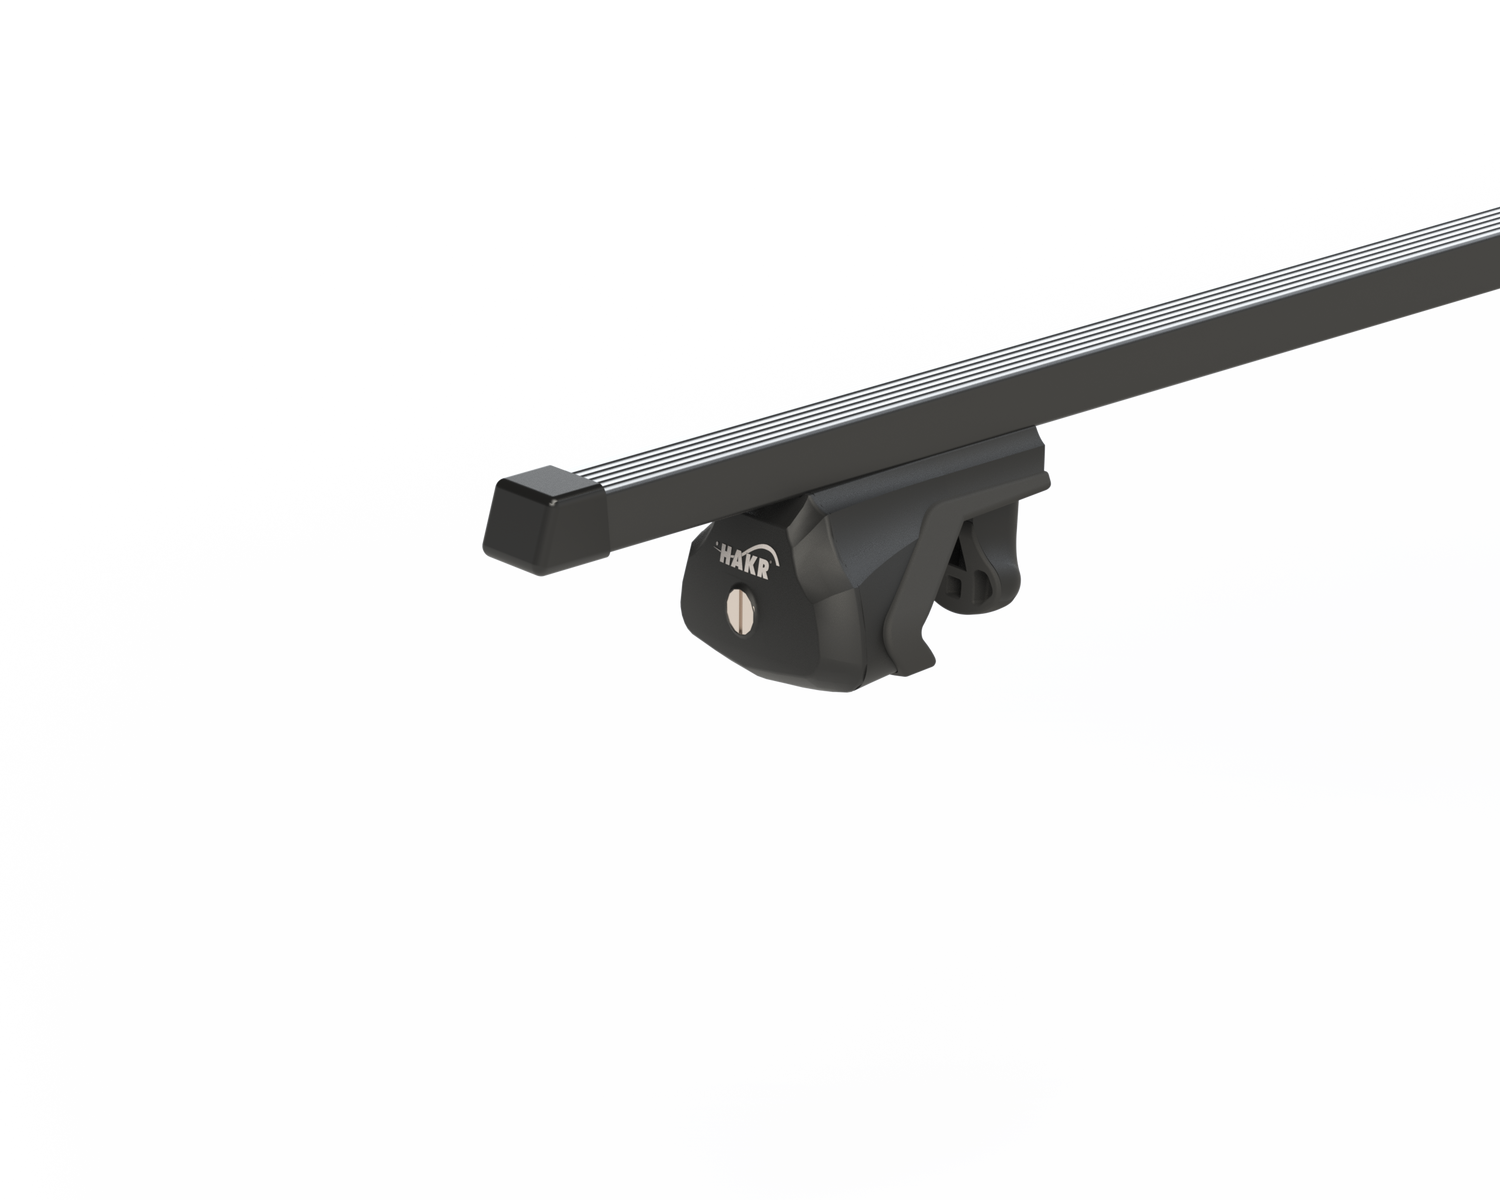 Strešný nosič OPEL INSIGNIA 5dv combi s integrovanými pozdĺžnikmi, čierna Fe tyč